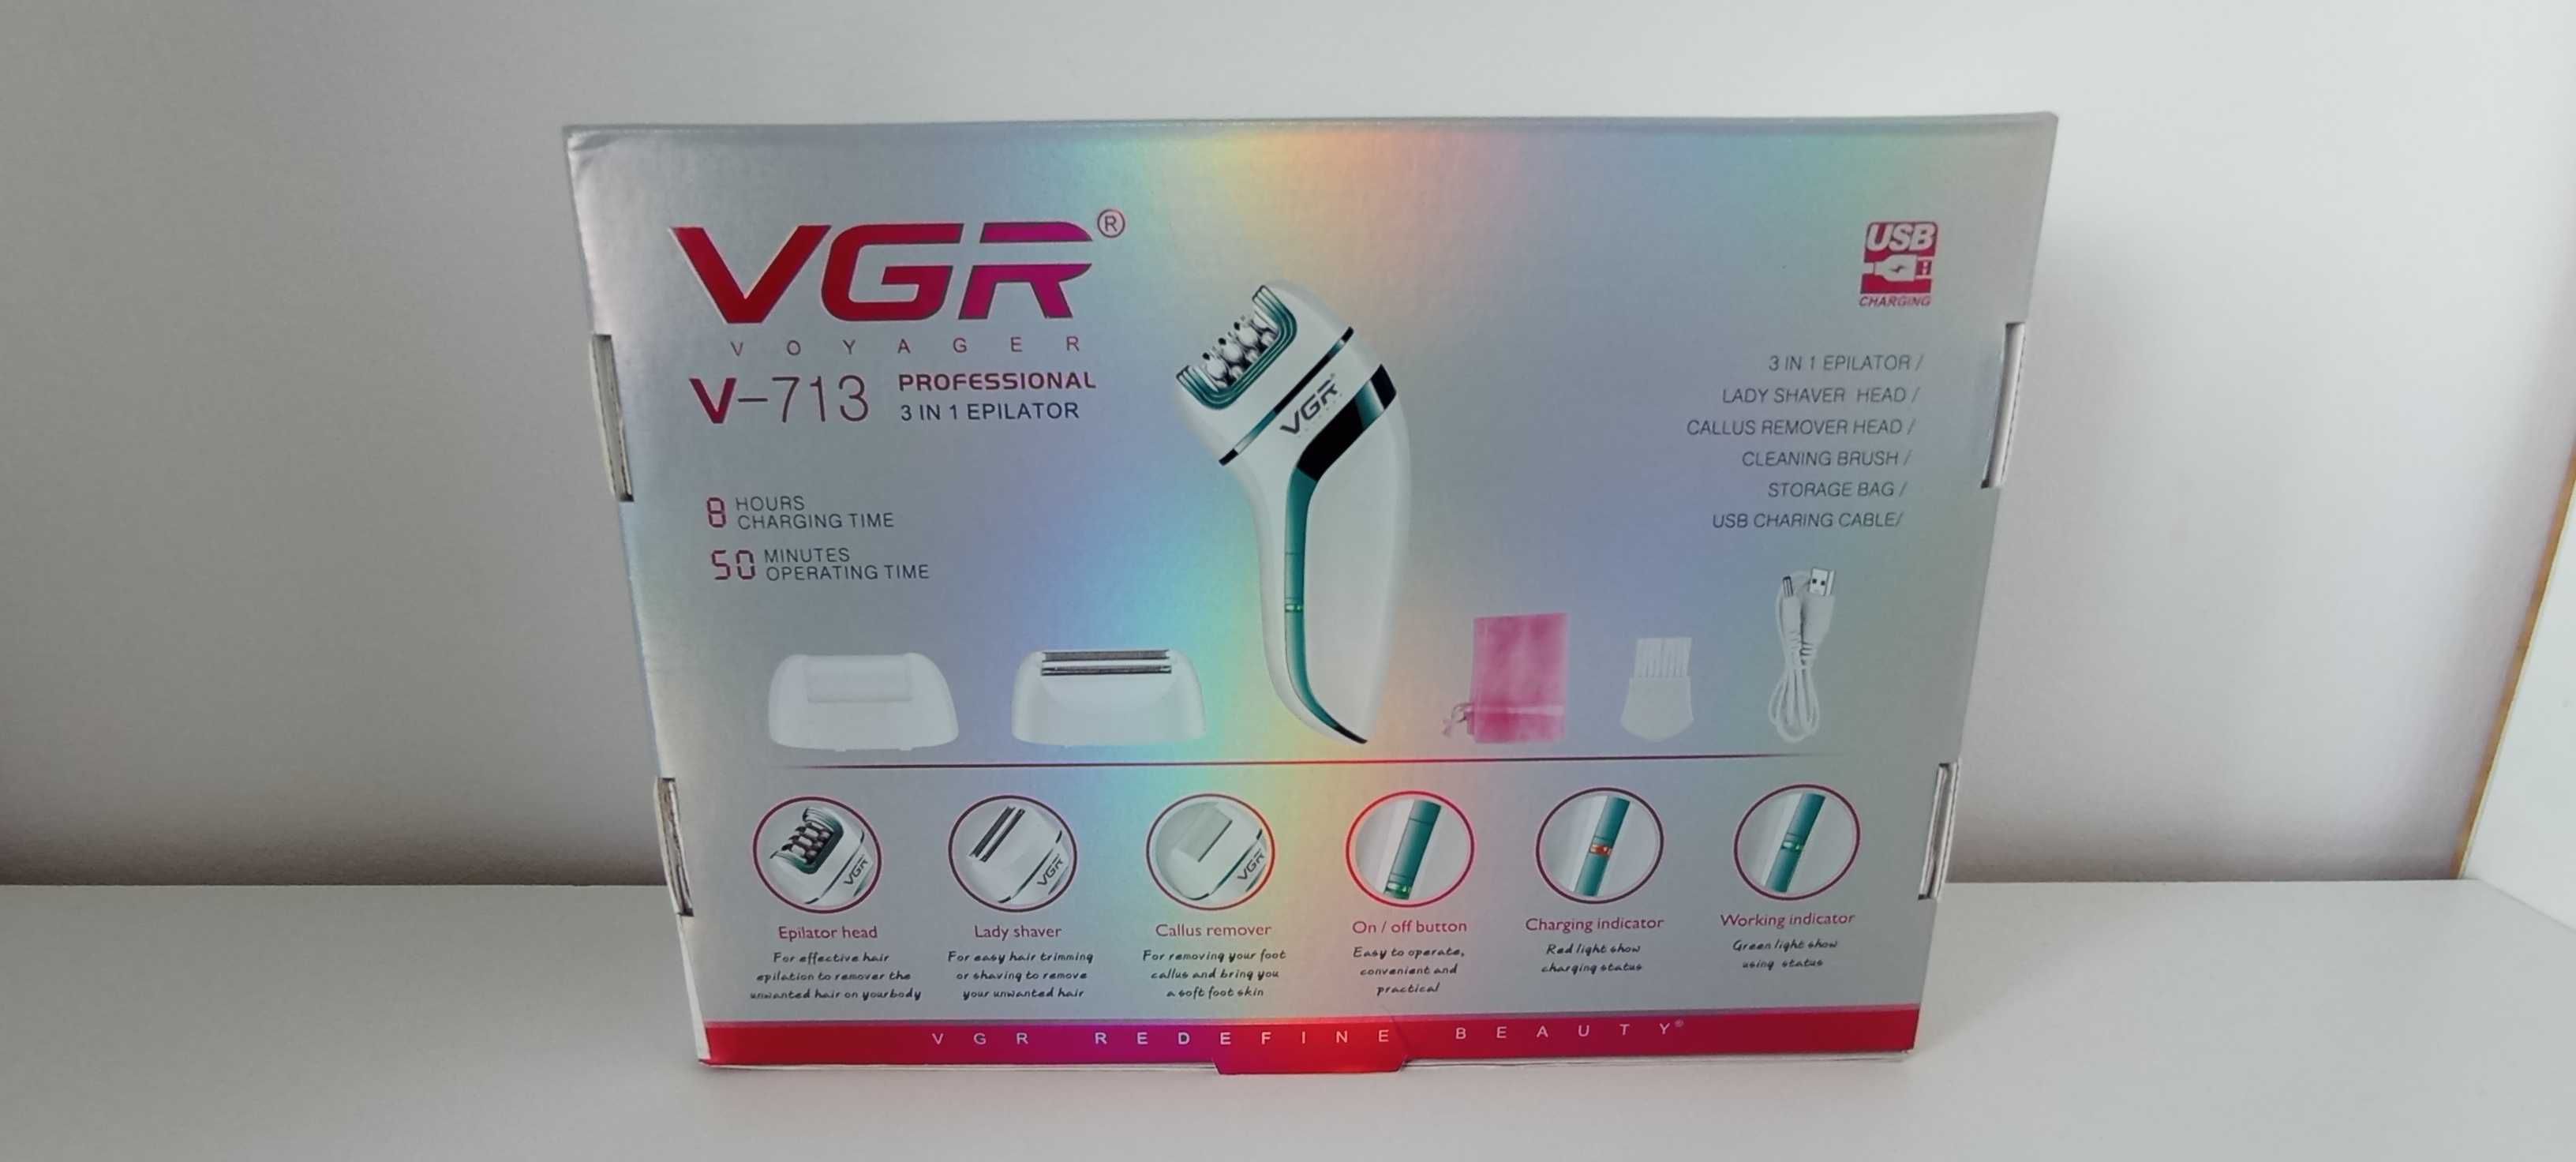 Urządzenie do depilacji Vgr Voyager V-713